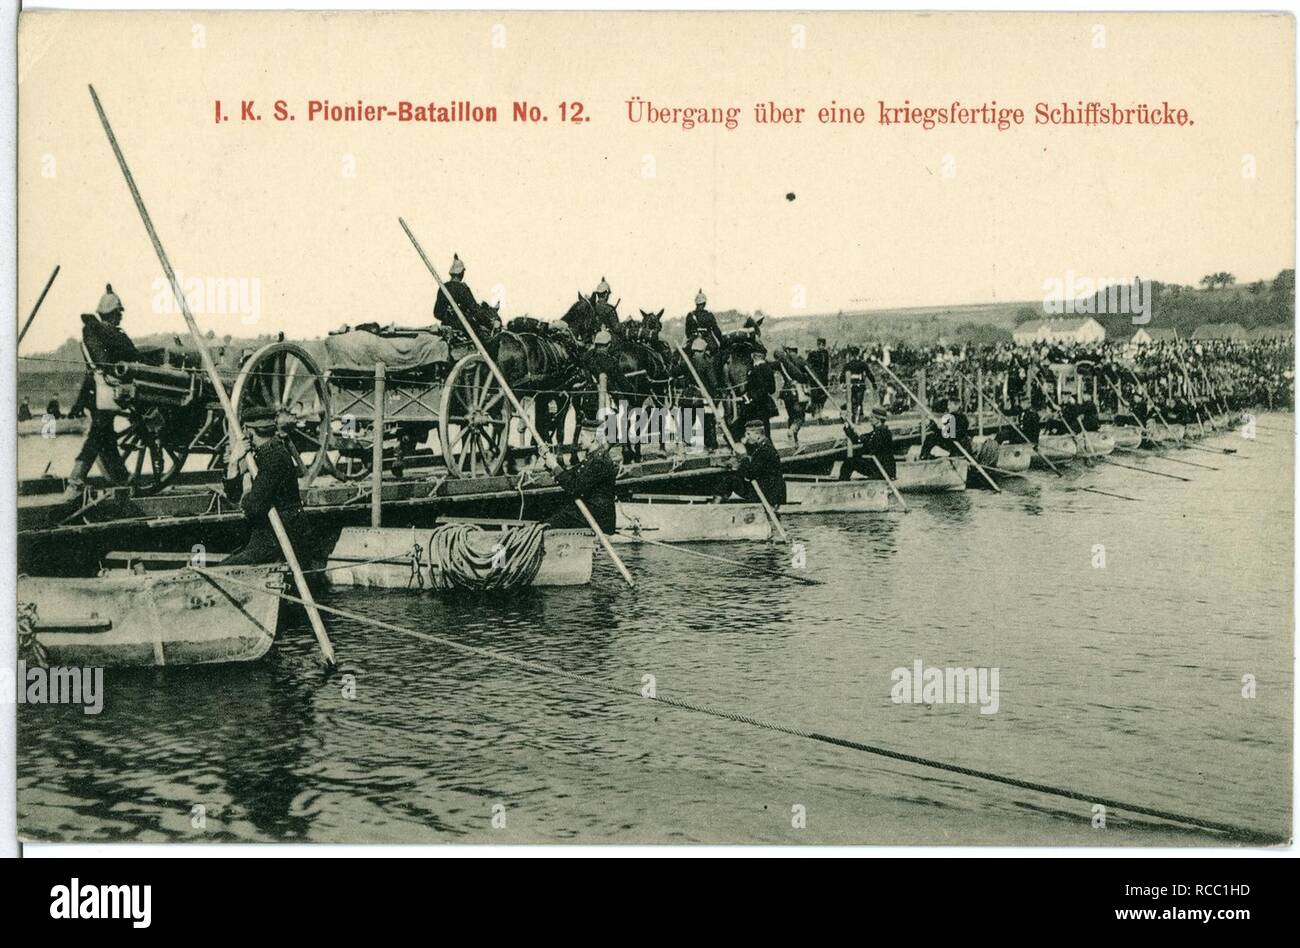 11160--1910-1. Königlich Sächsisches Pionier-Bataillon Nr. 12 - Übergang über eine kriegsfähige Schiffsbrücke- Foto de stock